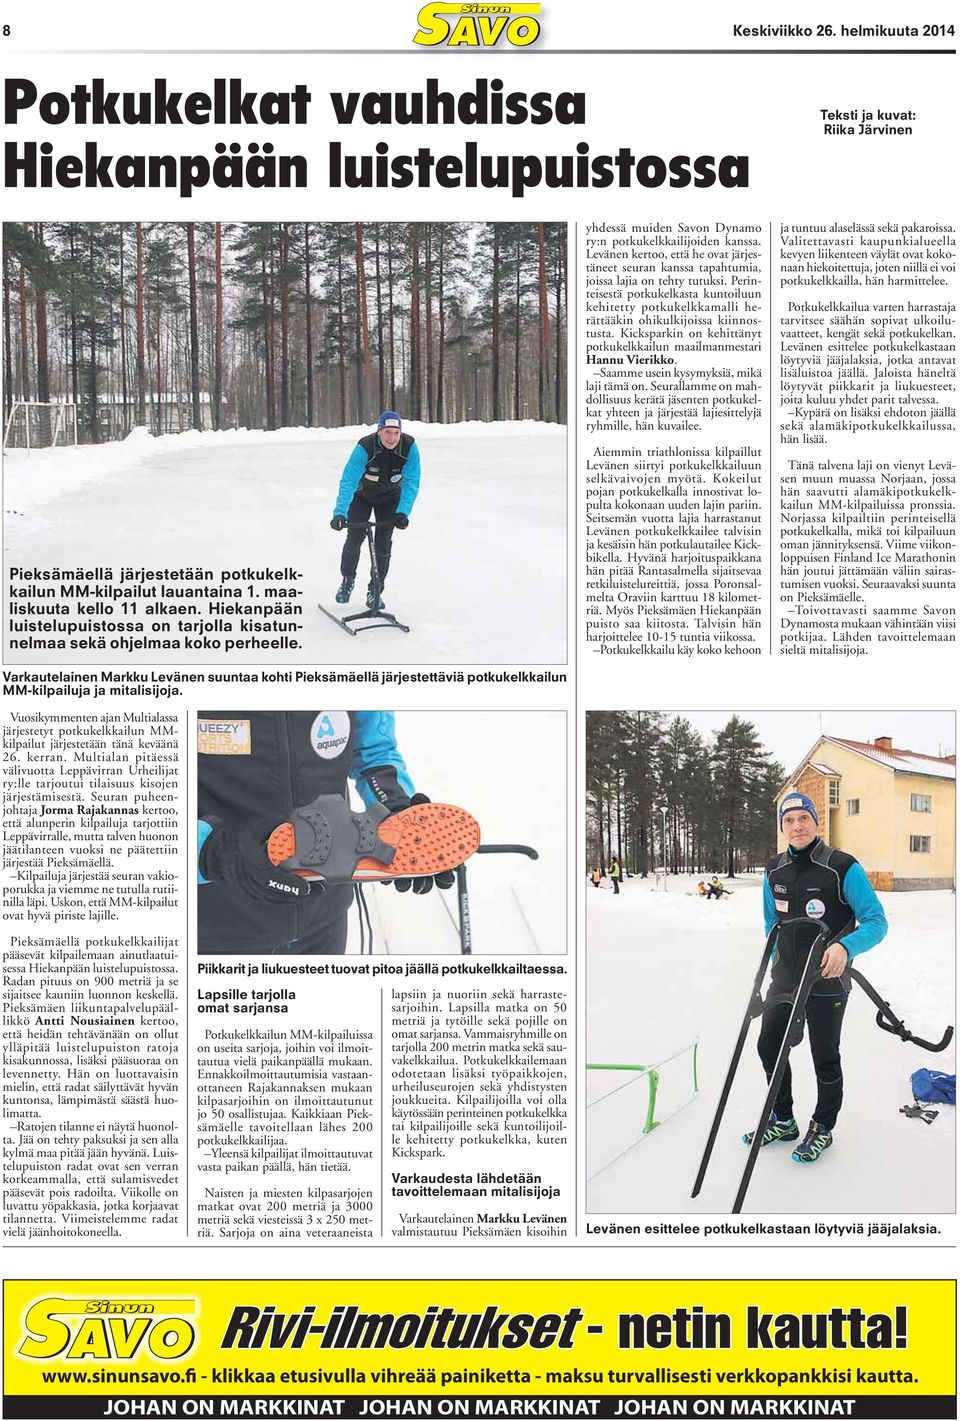 Varkautelainen Markku Levänen suuntaa kohti Pieksämäellä järjestettäviä potkukelkkailun MM-kilpailuja ja mitalisijoja.